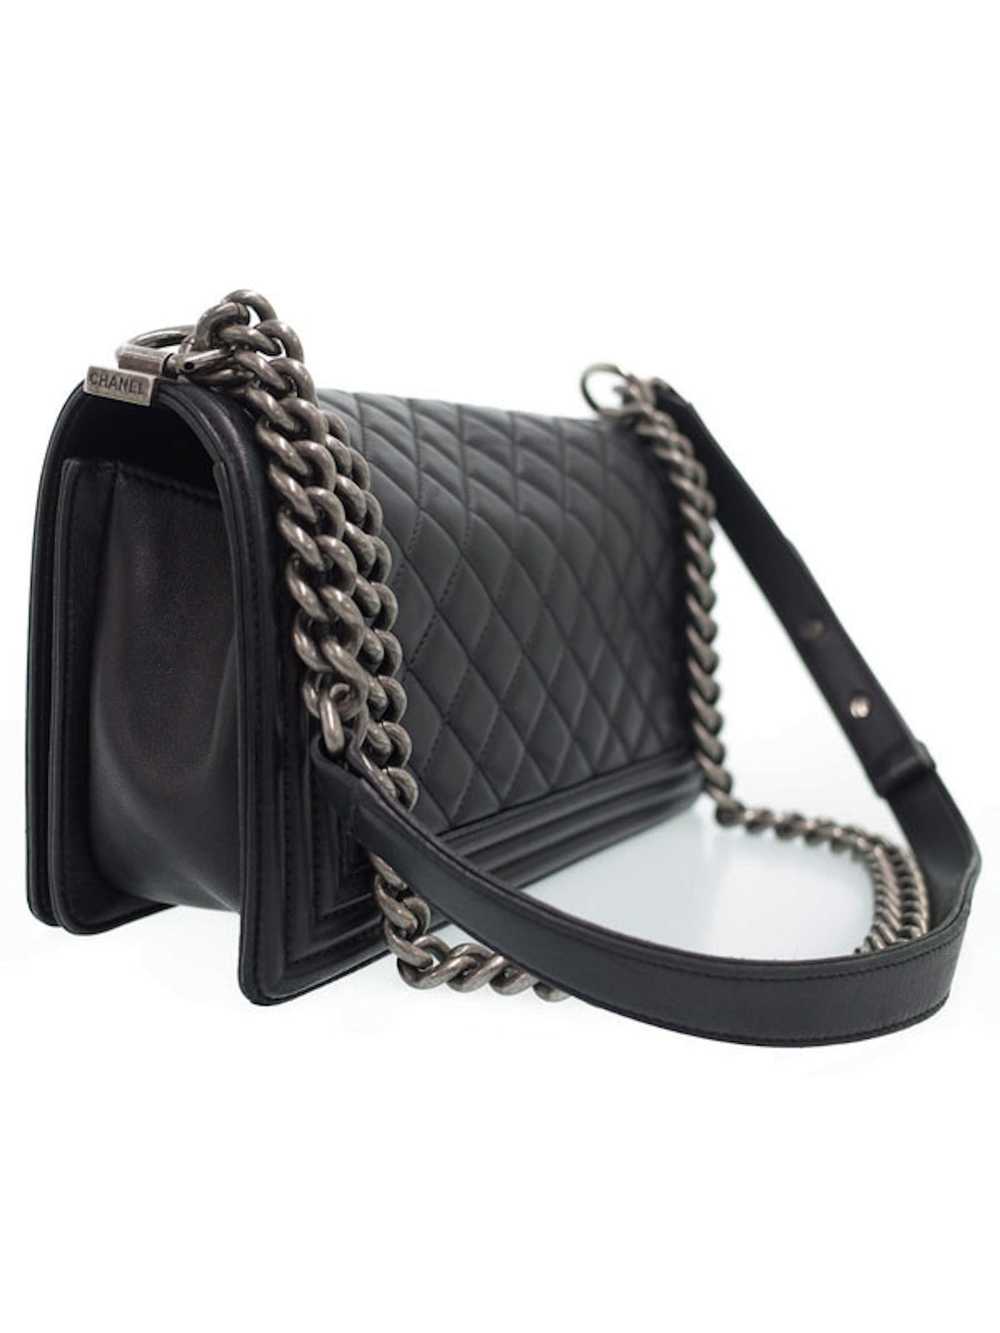 Chanel Chanel Chain Shoulder Bag Black - image 2